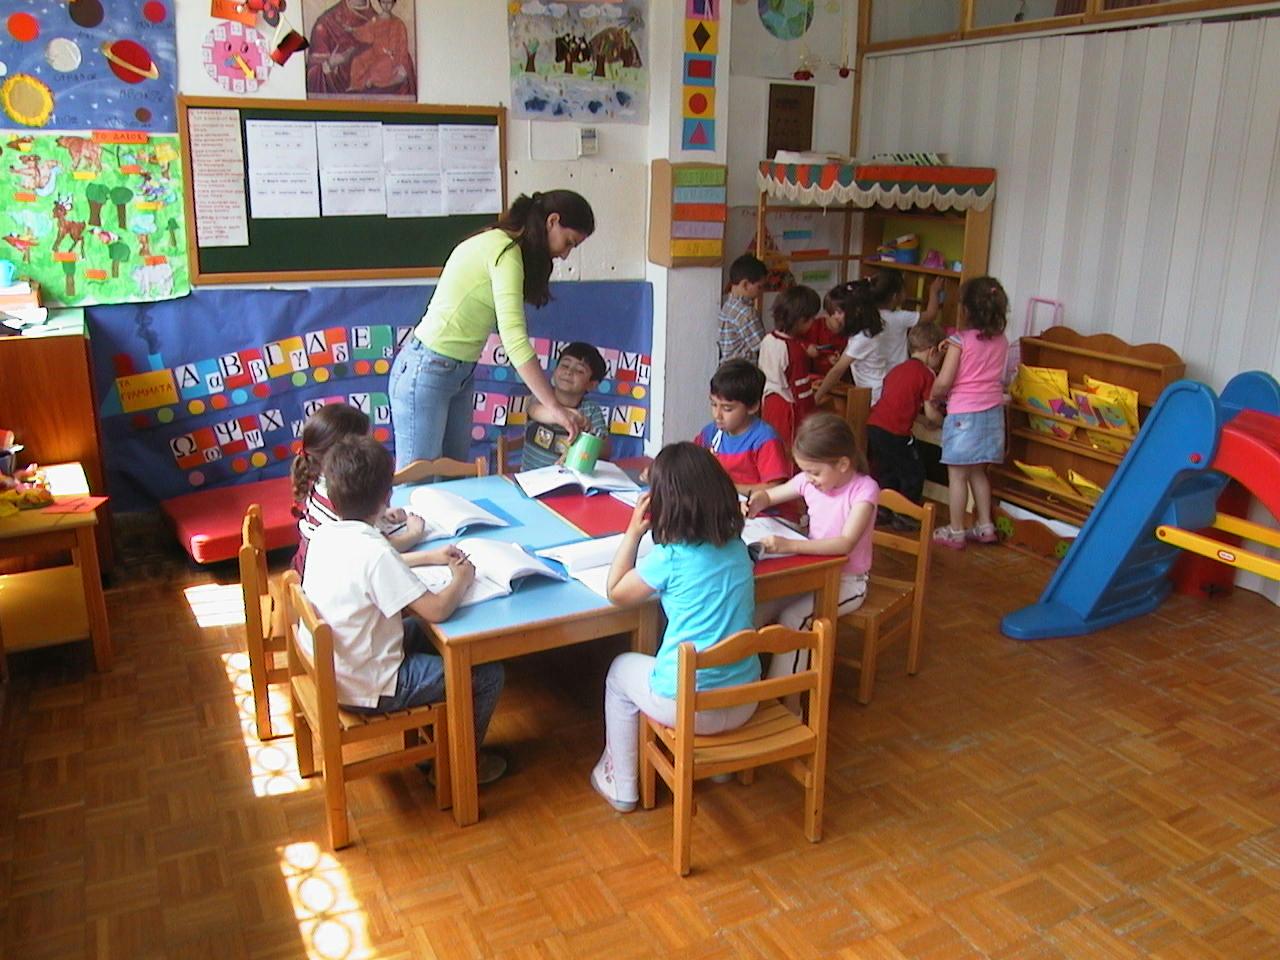 Έρχονται οι 48 προσλήψεις σε παιδικούς σταθμούς του Ηρακλείου